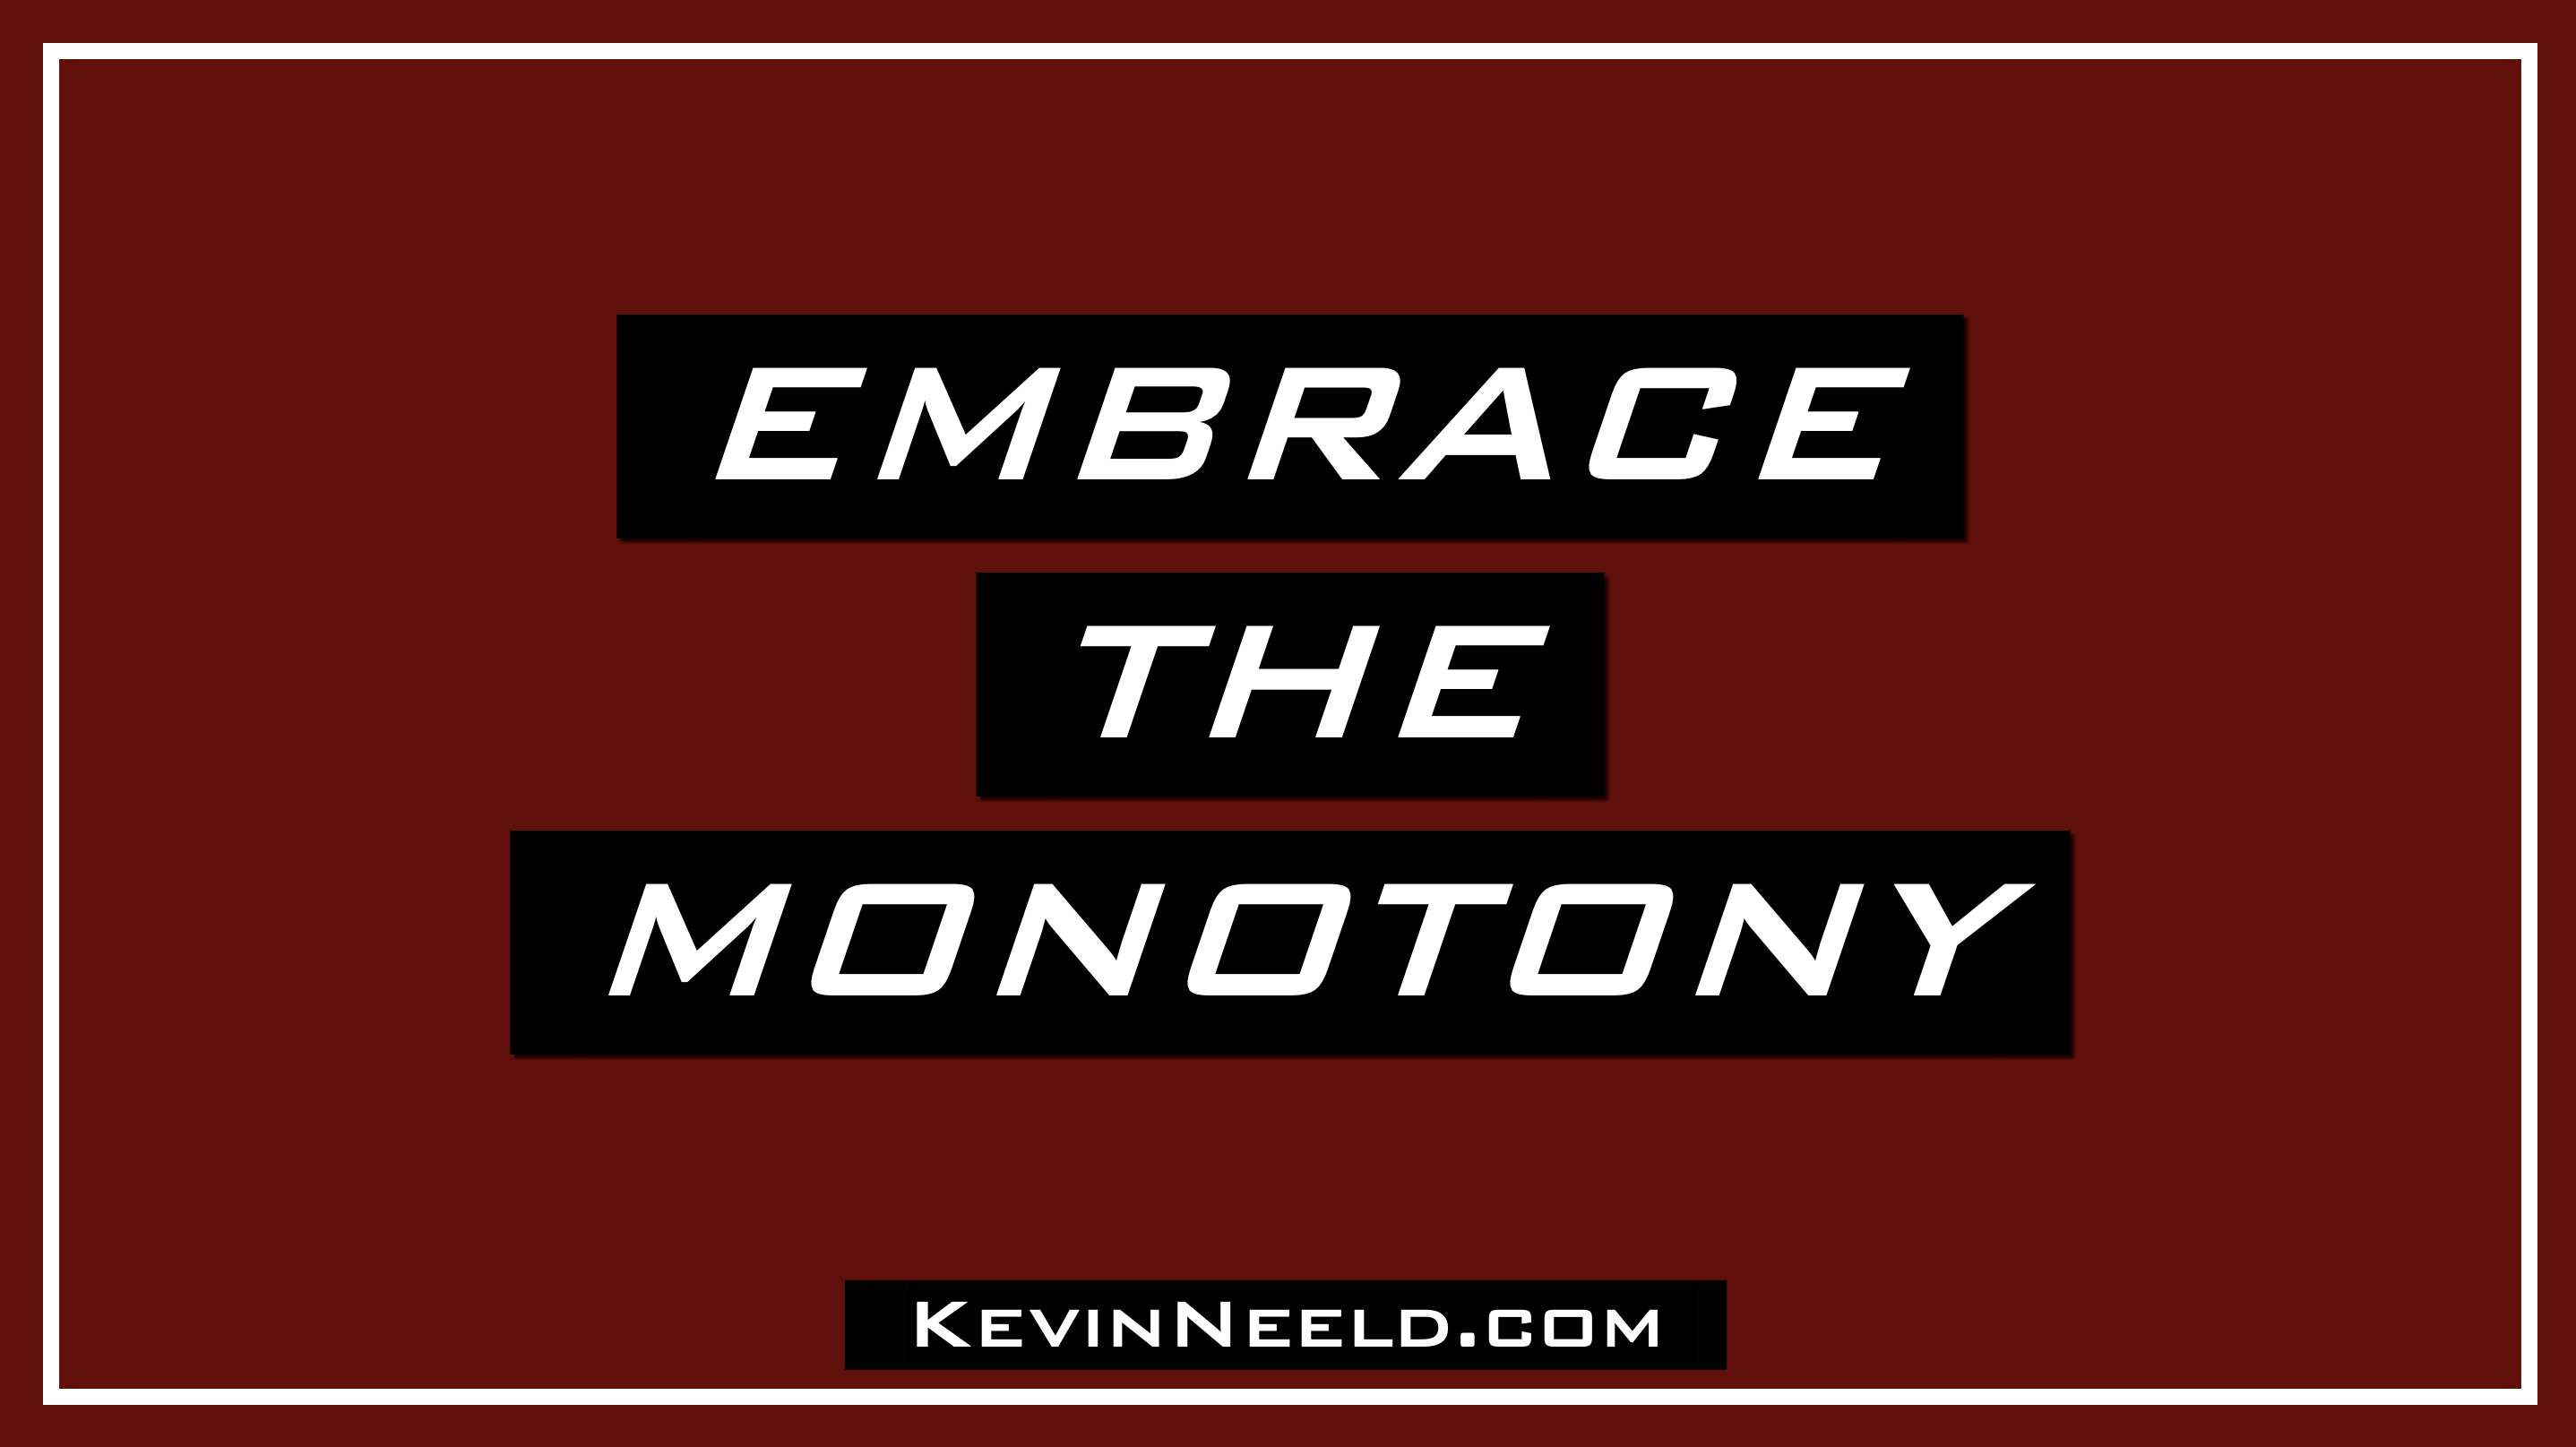 Embrace the Monotony